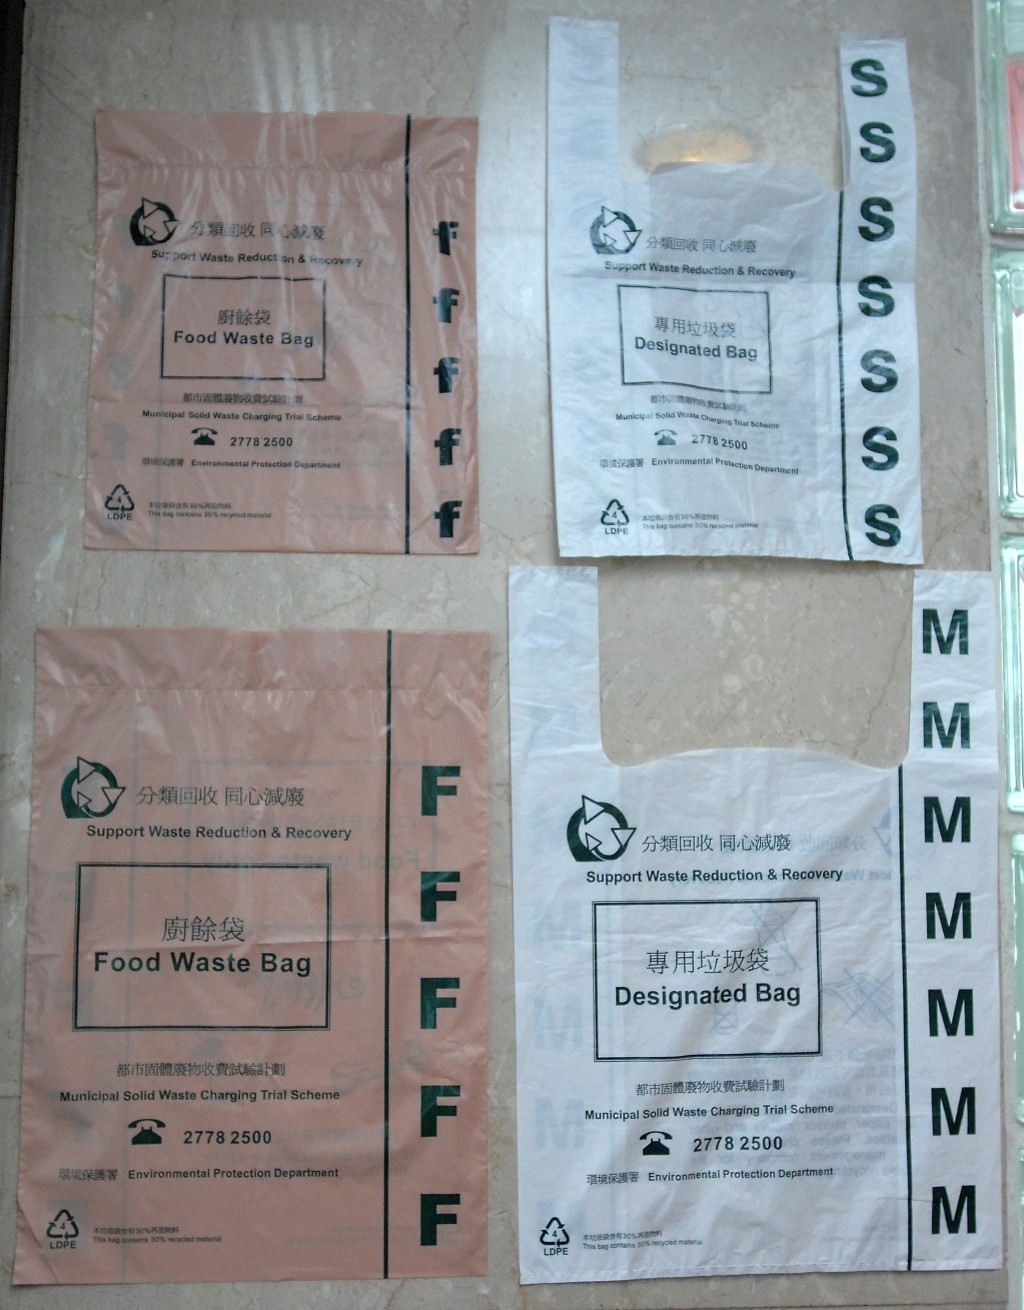 2006年曾推出「都市固体废物收费试验计划」。资料图片